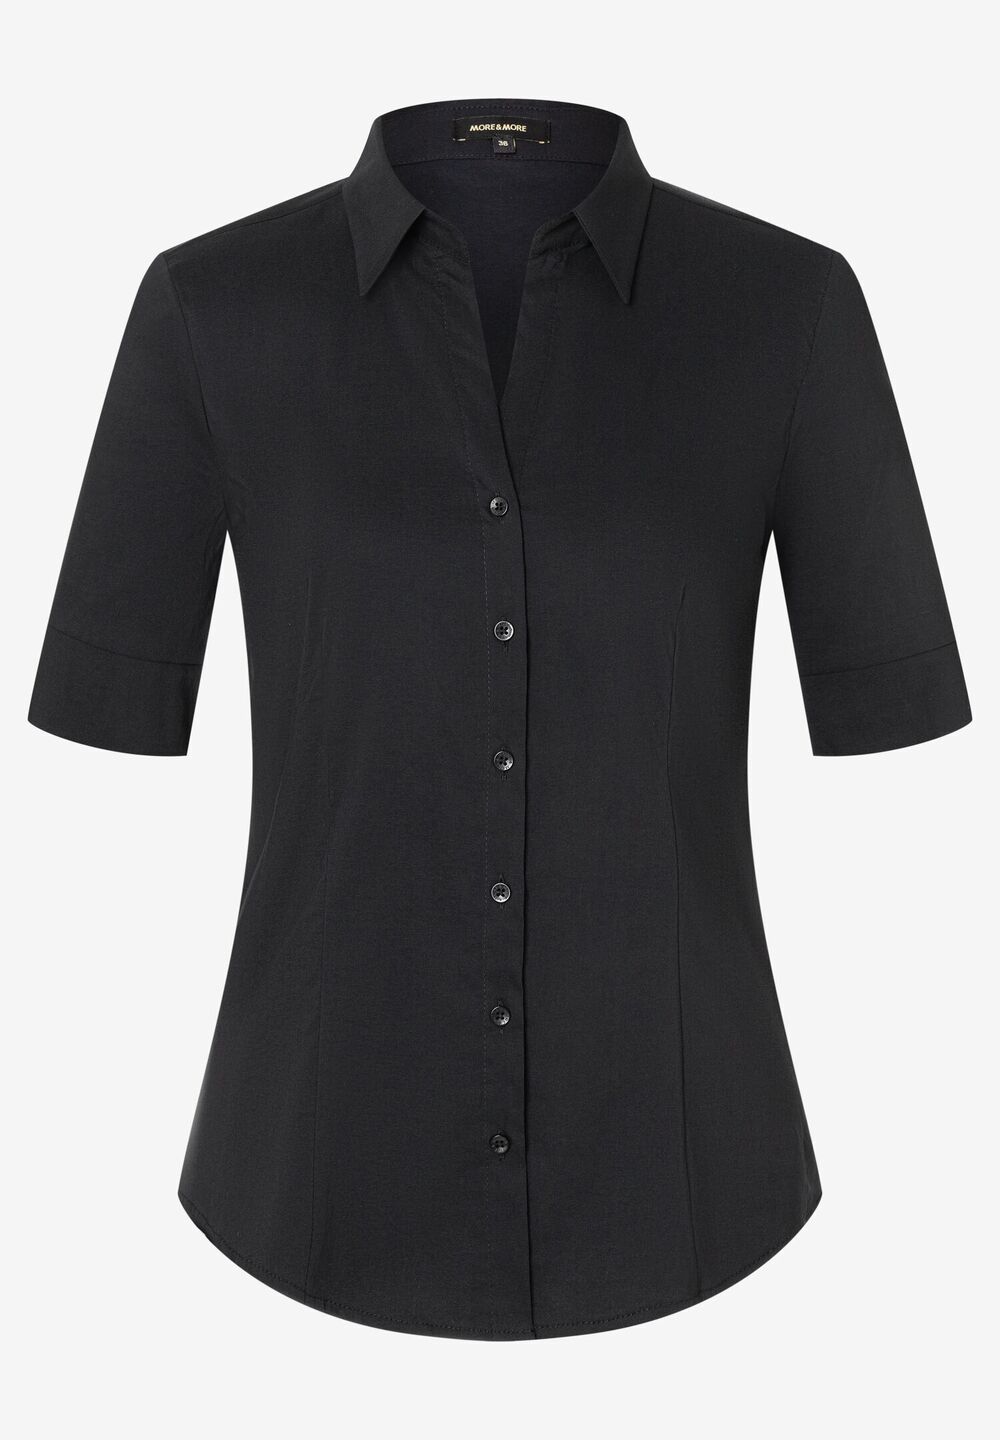 Baumwoll/Stretch Bluse, schwarz, schwarzDetailansicht 2